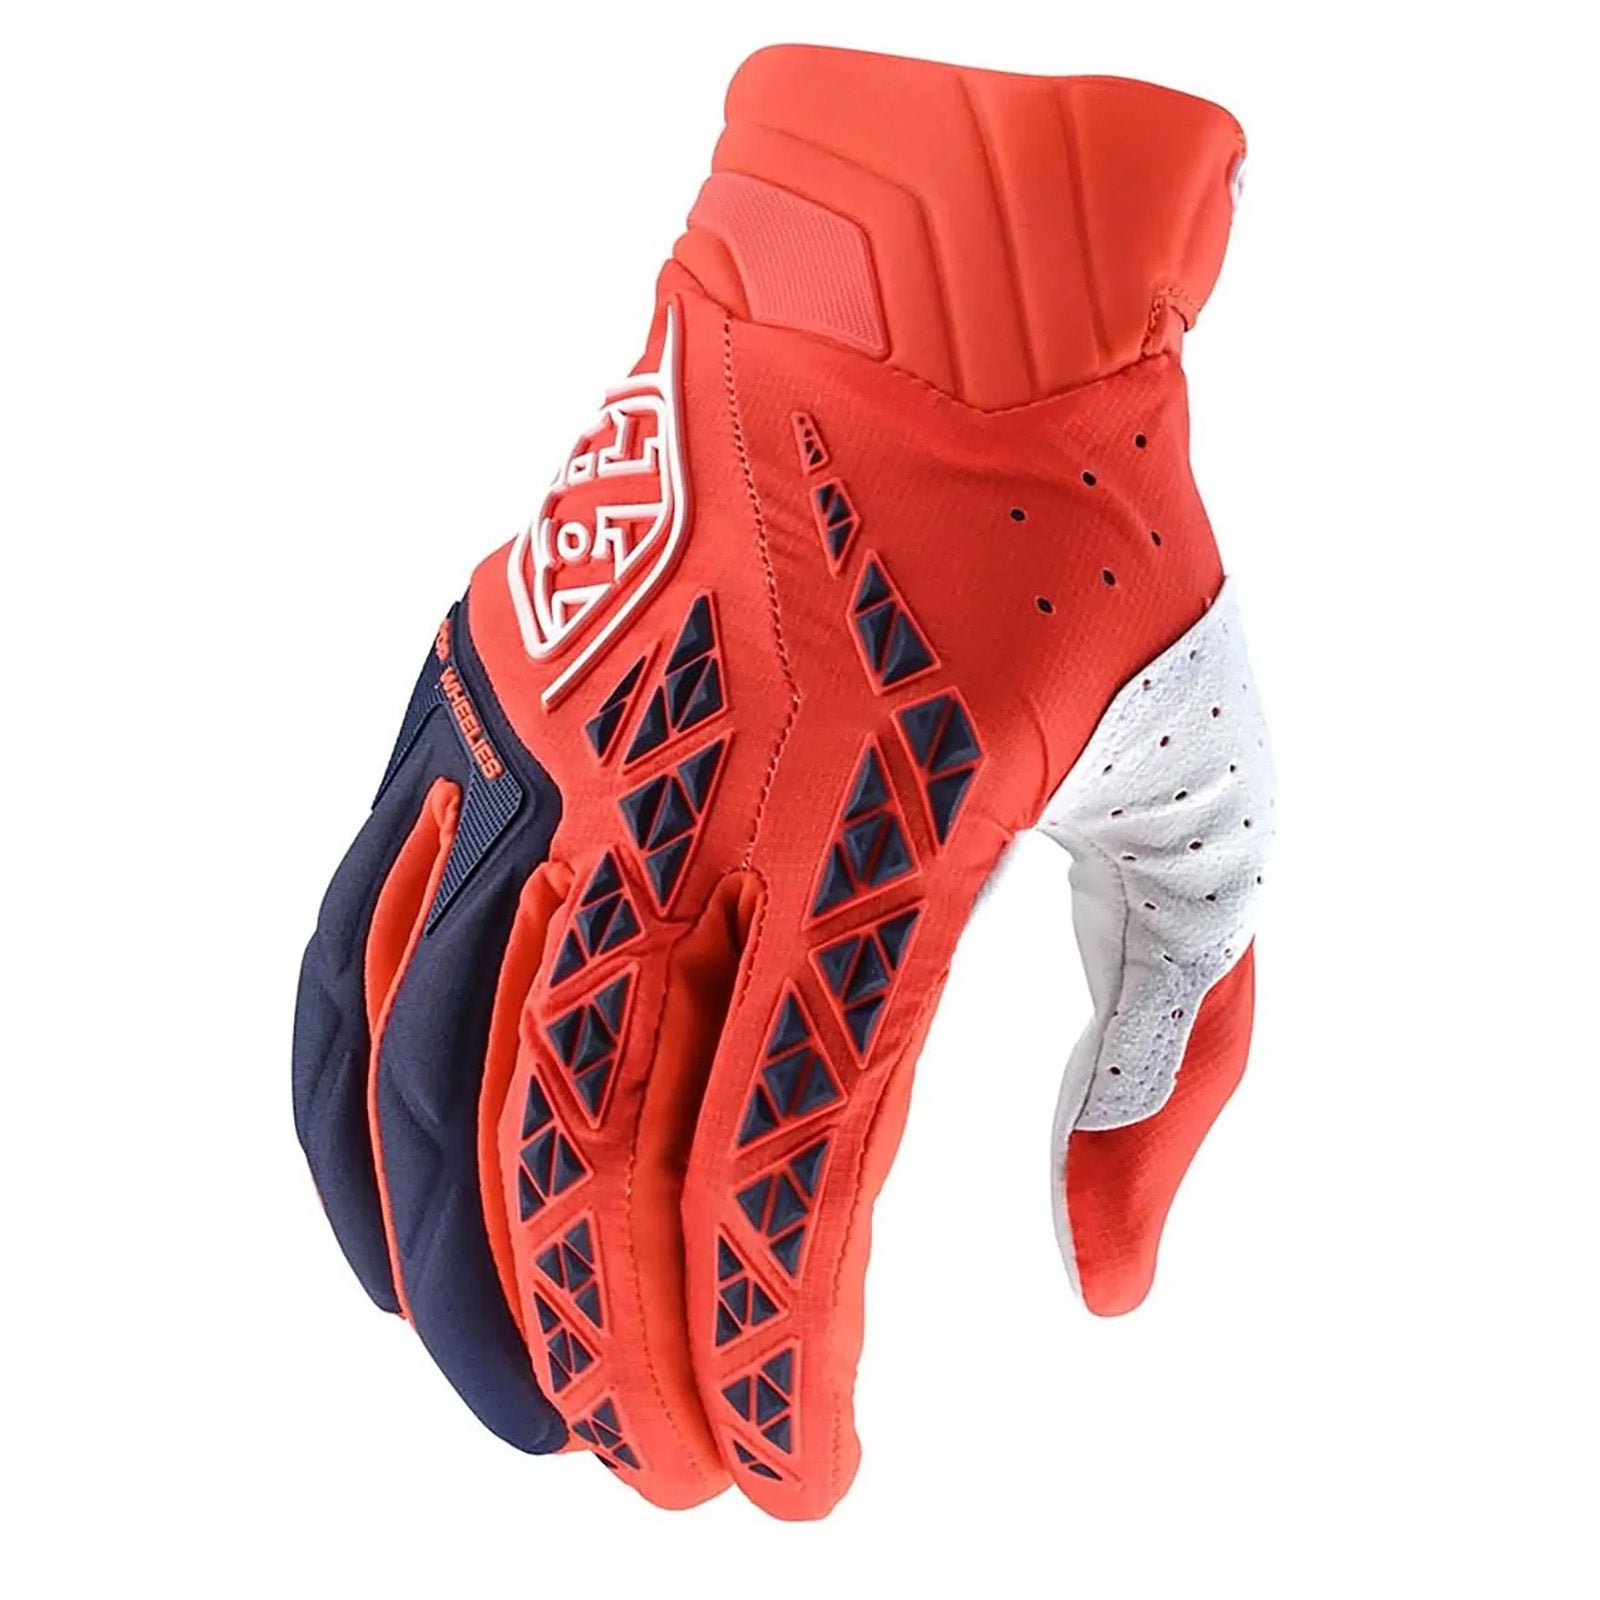 
Troy Lee Designs SE Pro Solid Men's Off-Road Gloves 